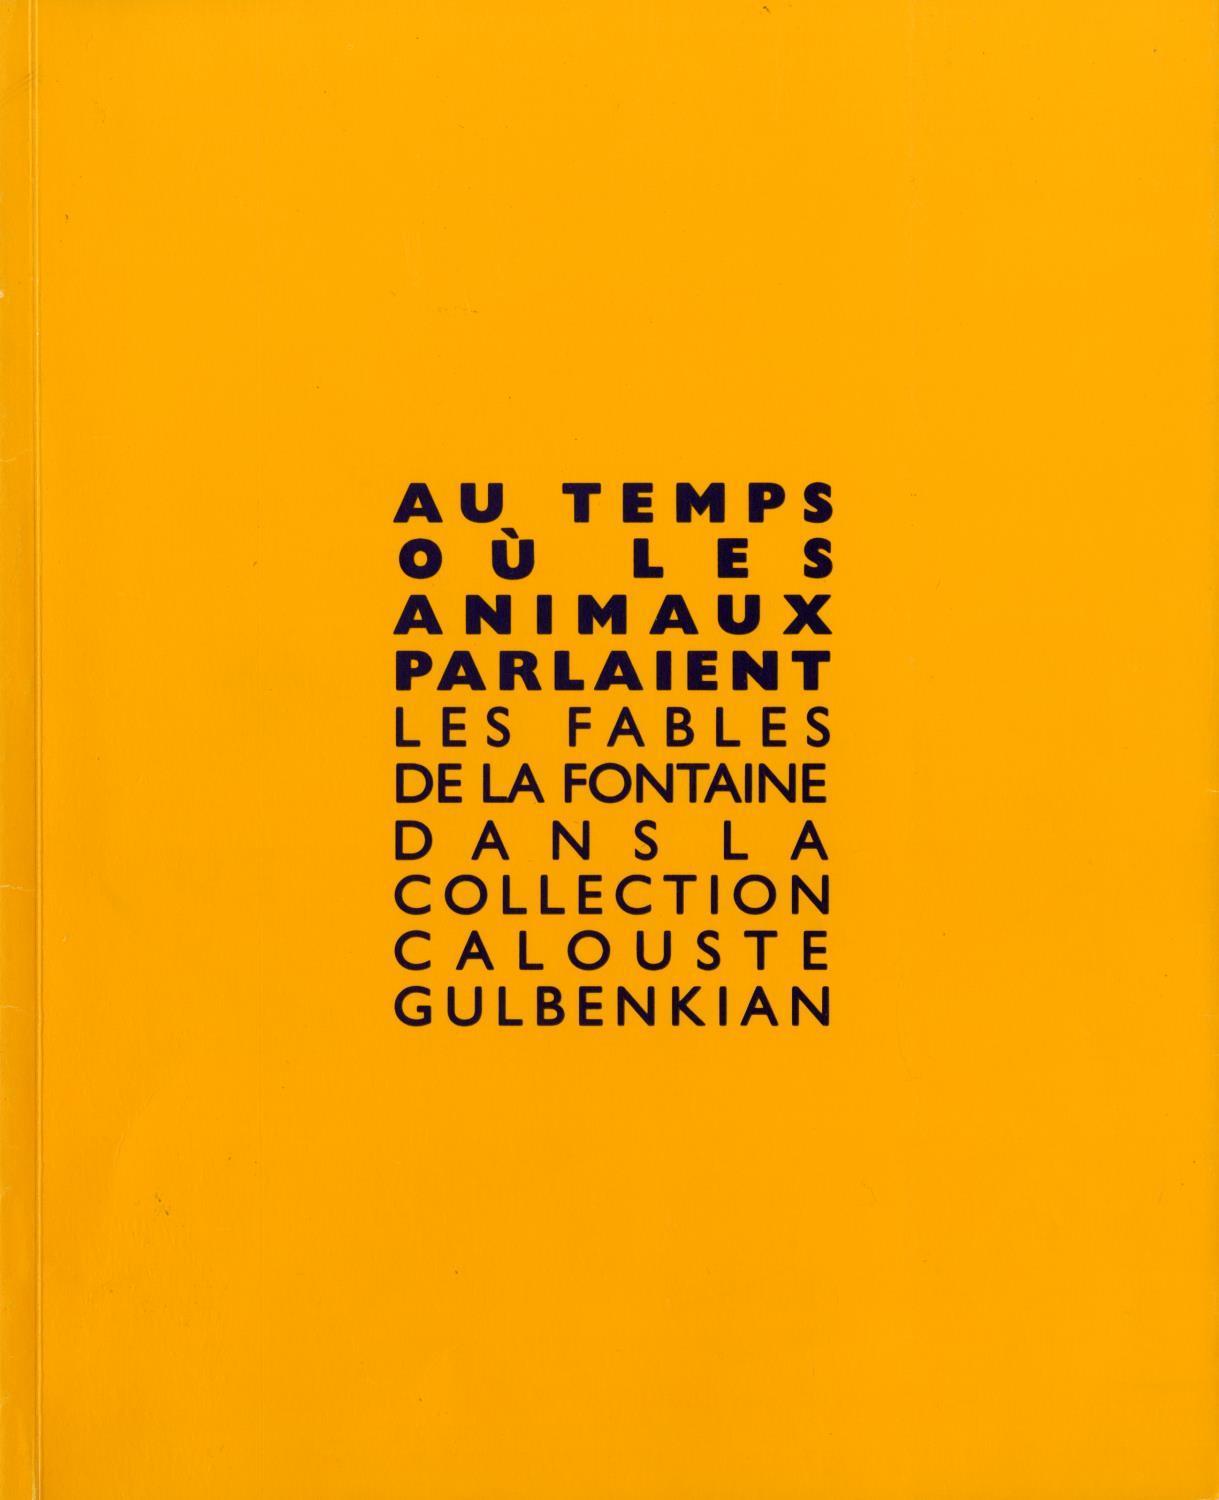 Au Temps où les Animaux Parlaient. Les Fables de La Fontaine dans la Collection Calouste Gulbenkian